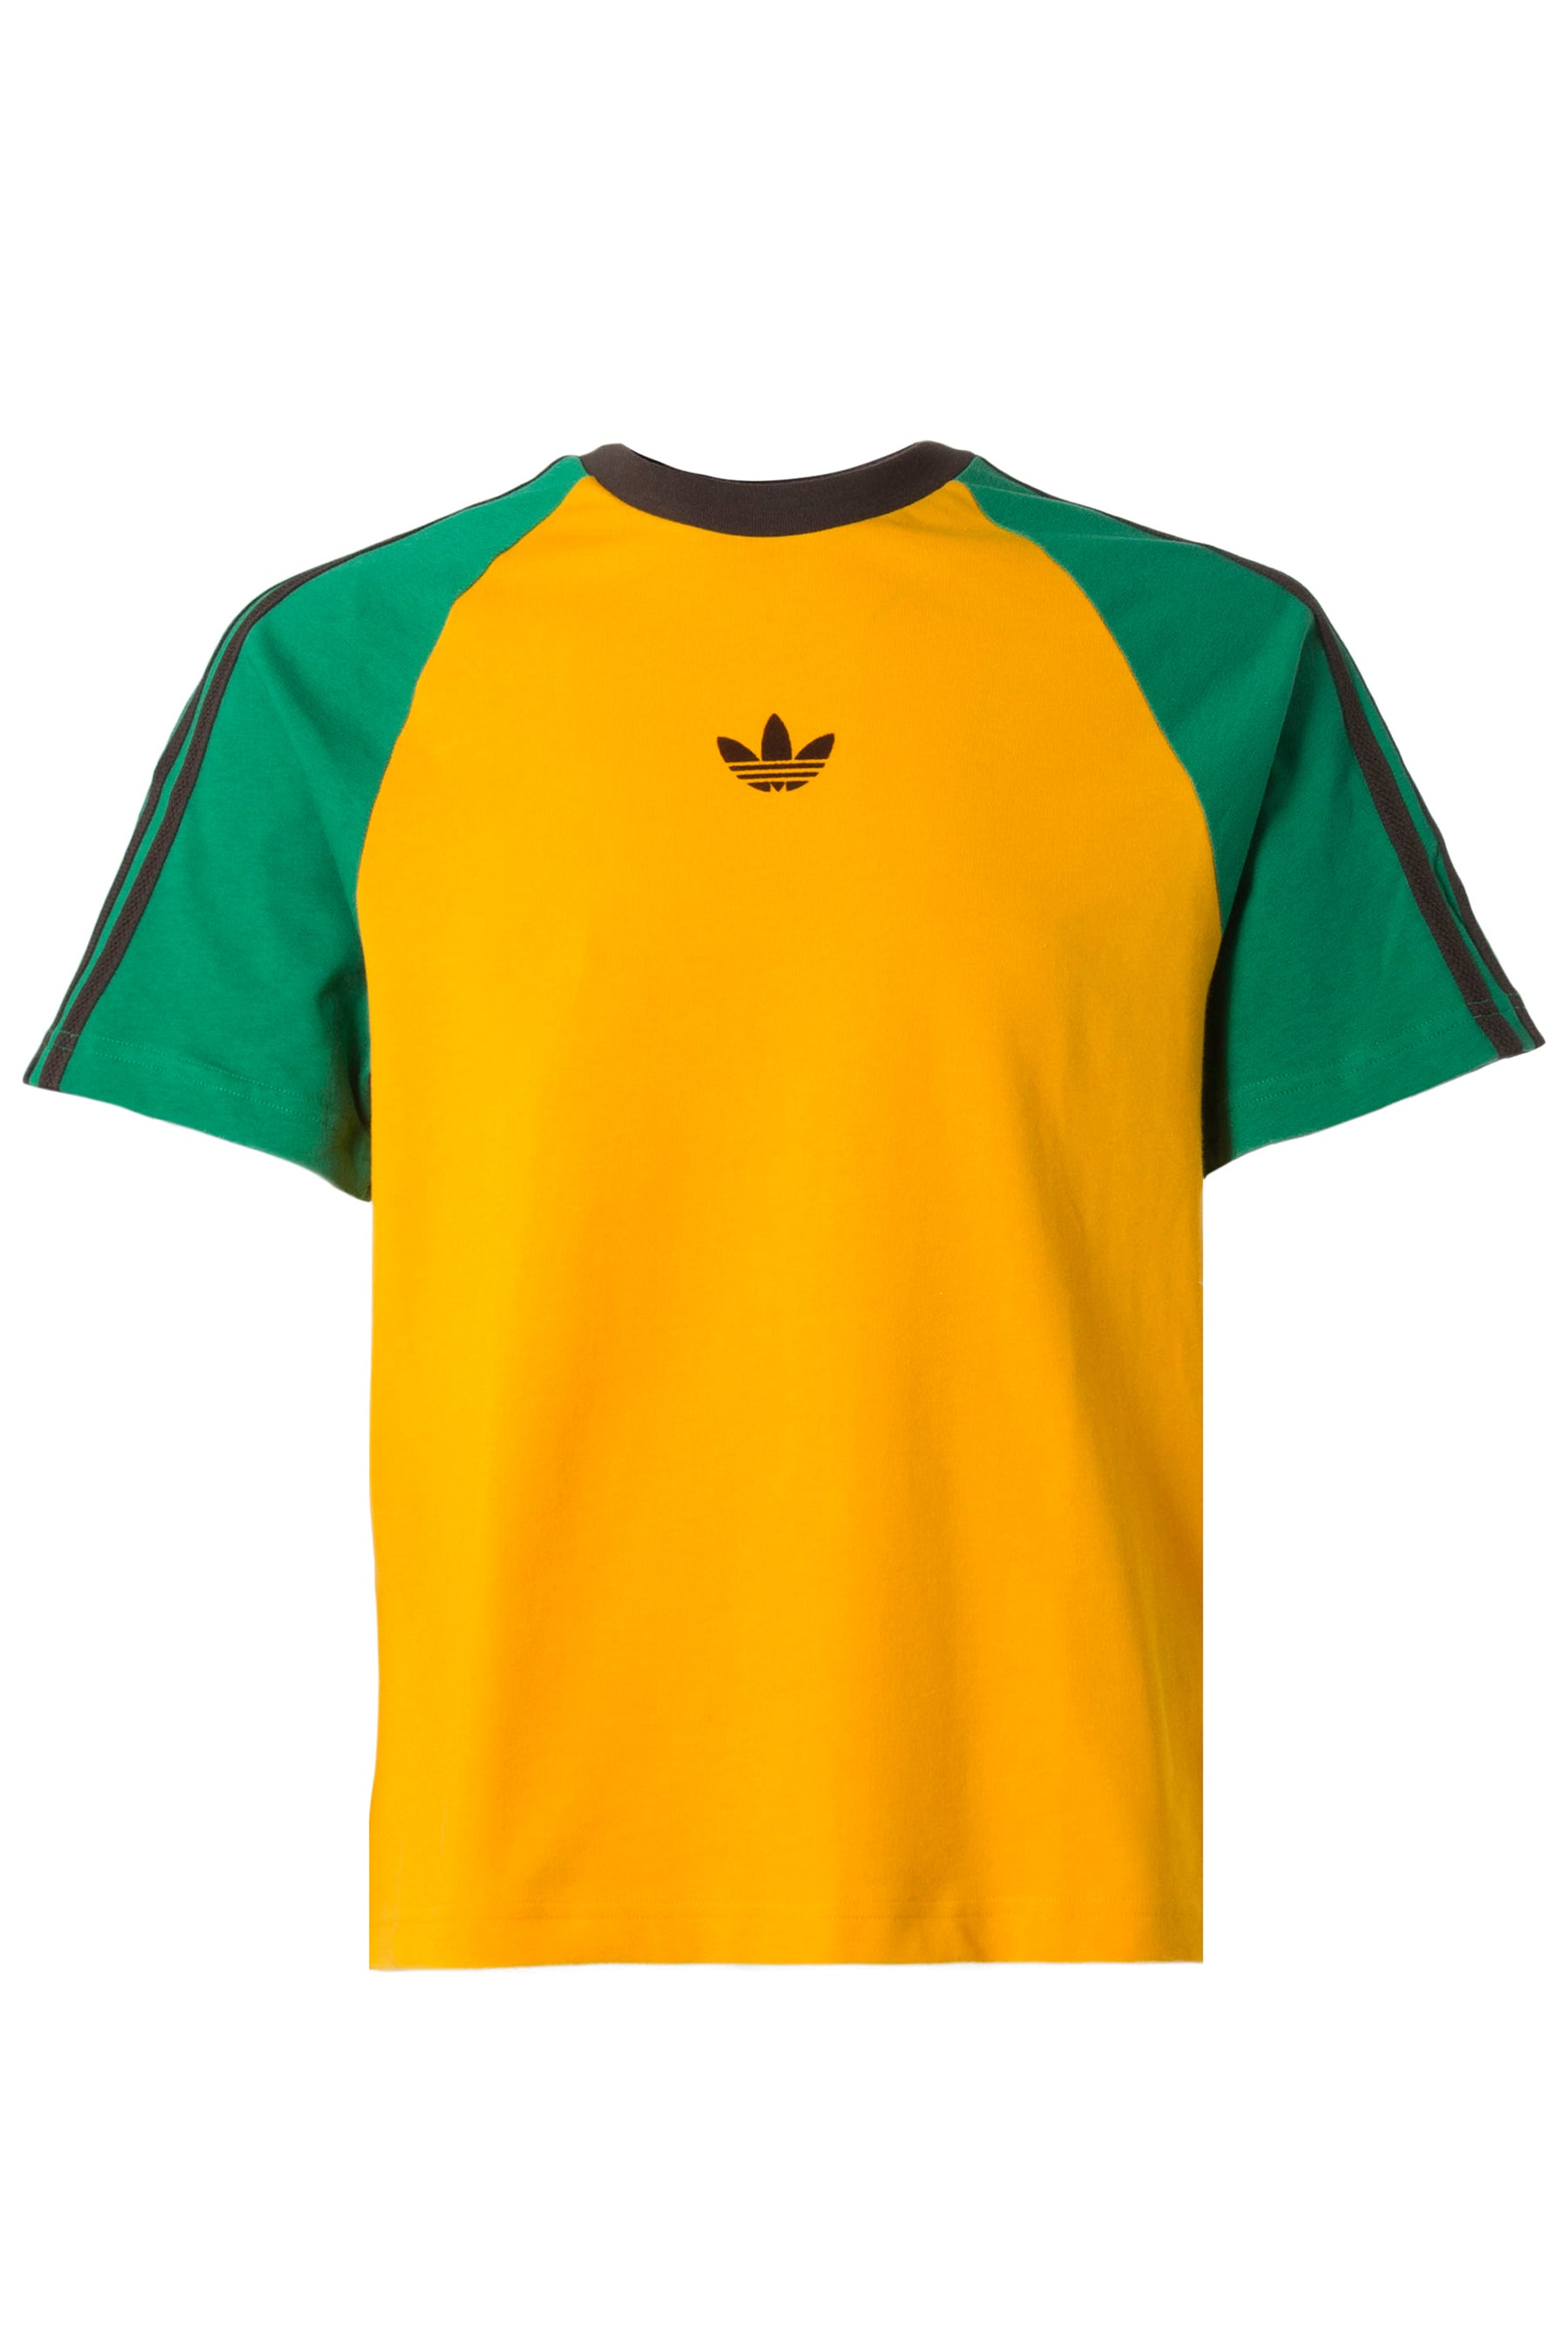 Wales Bonner×Adidas Originals Tシャツ